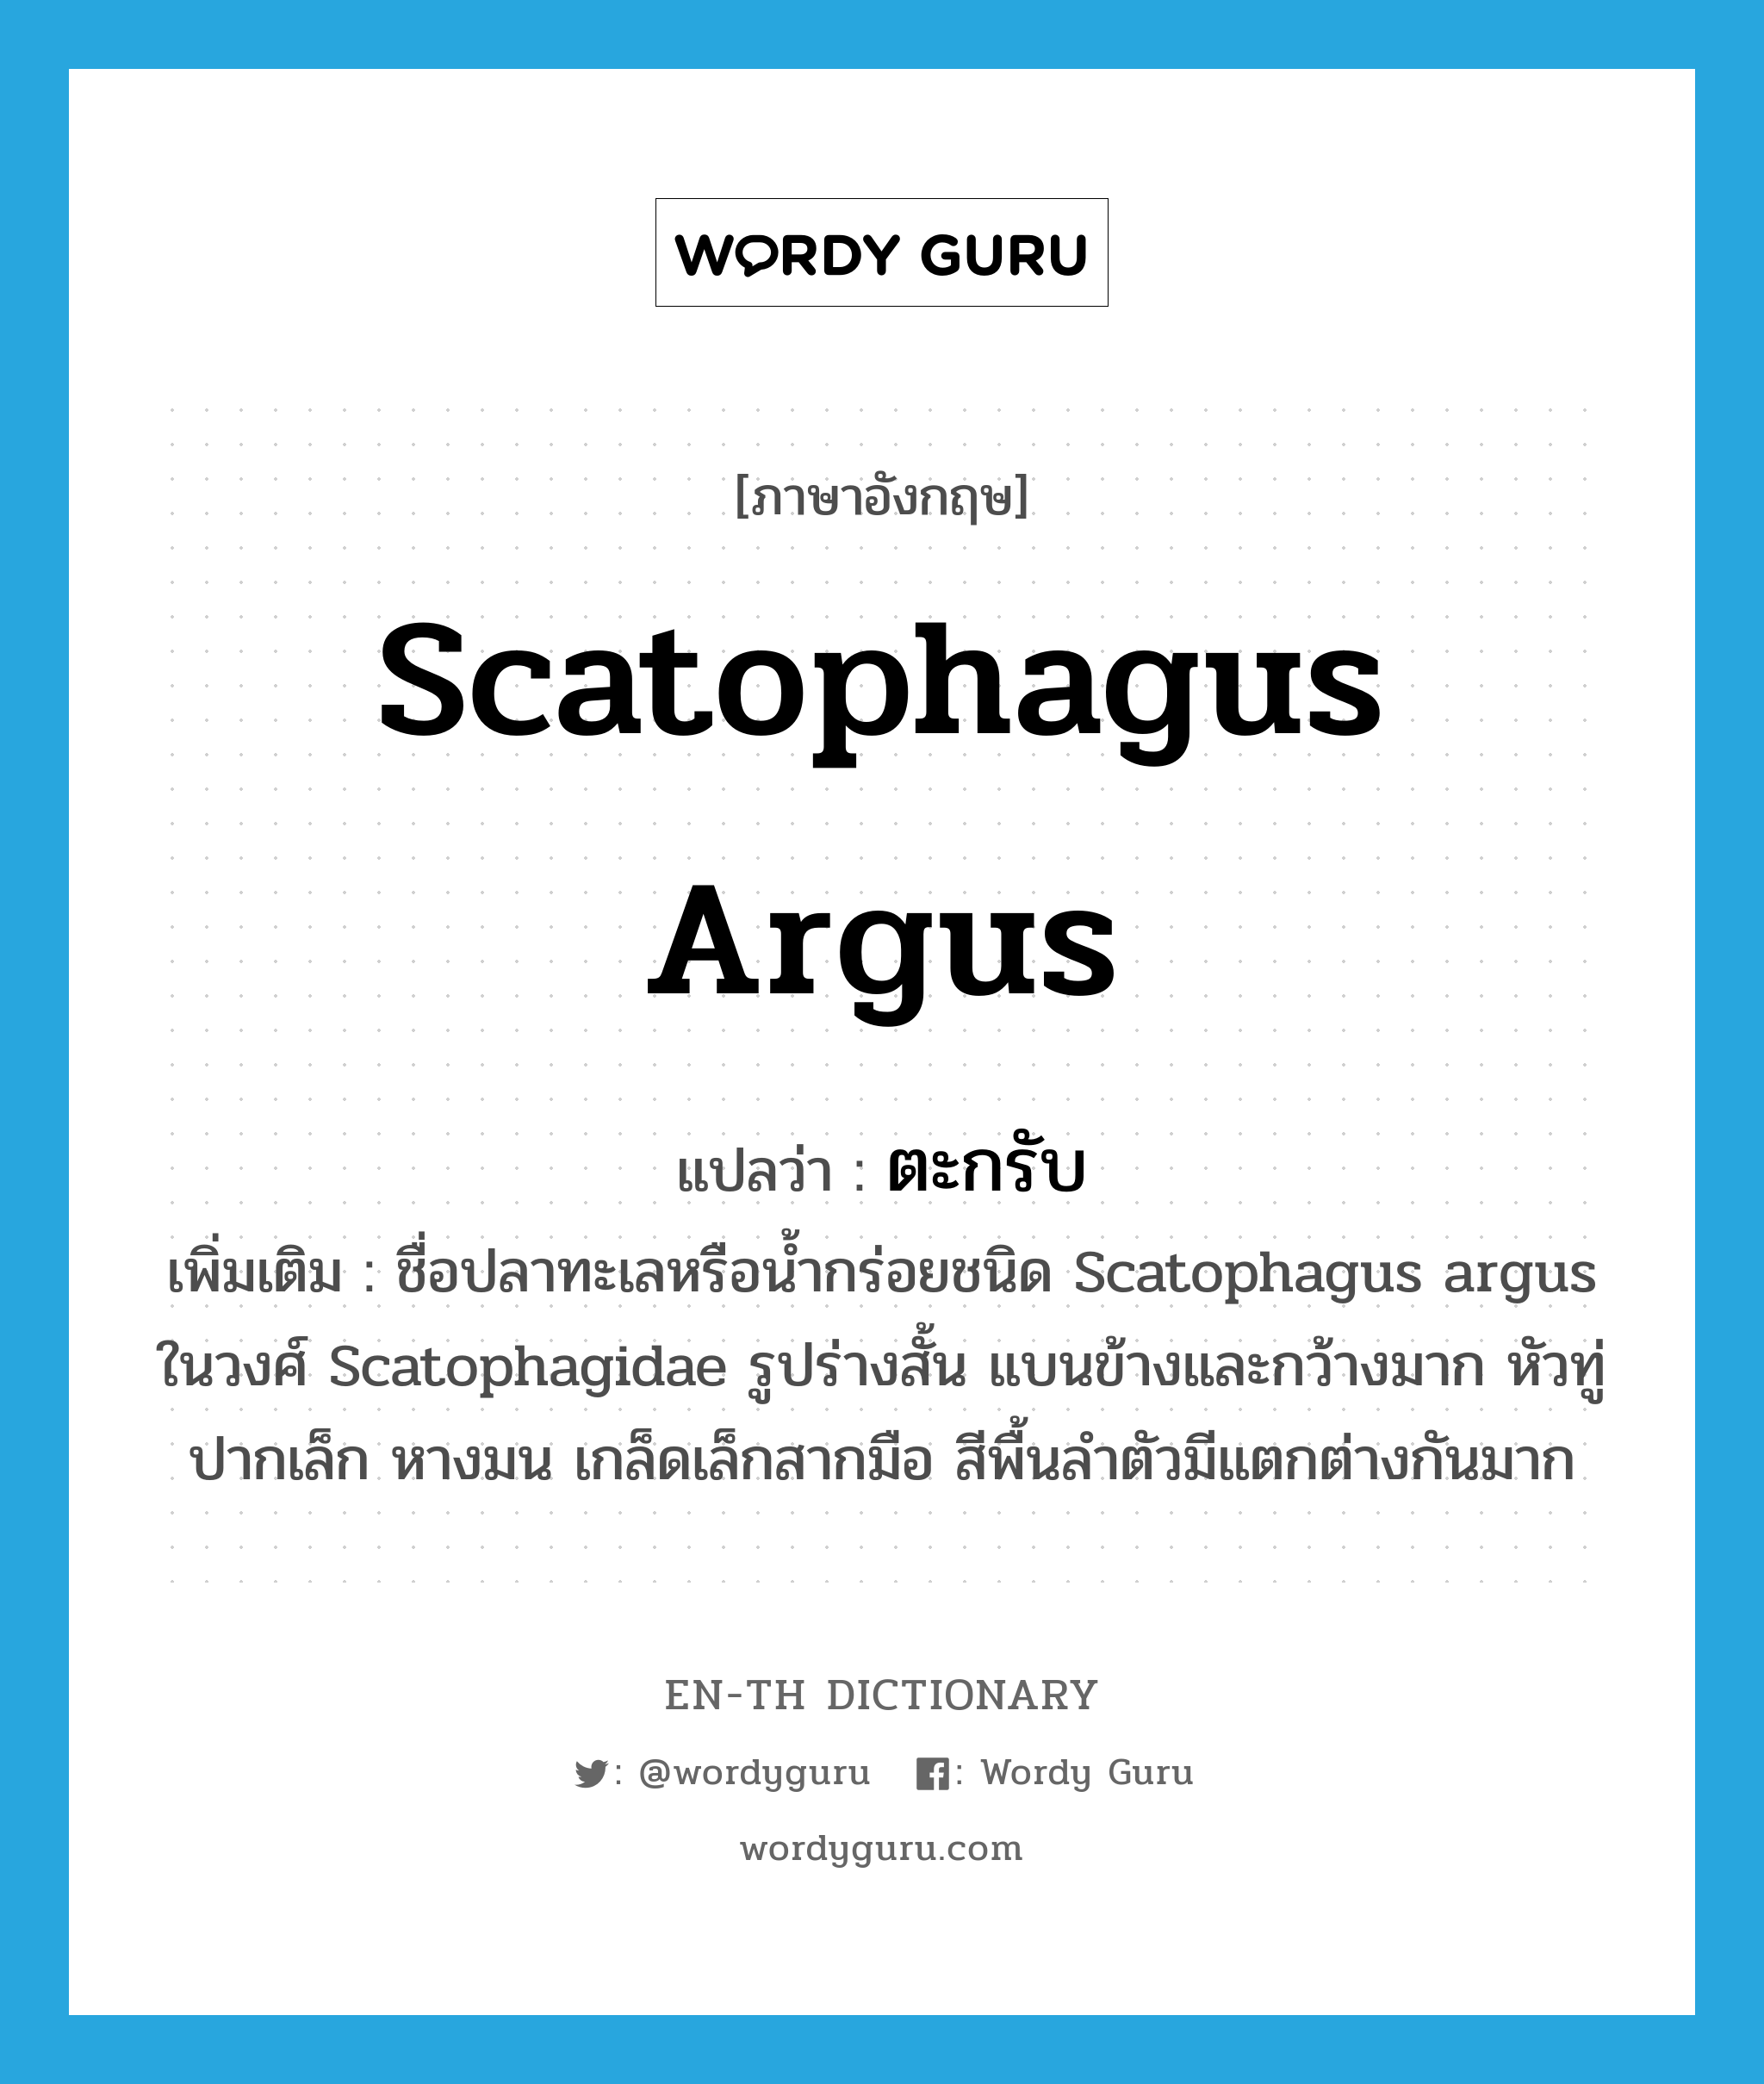 Scatophagus argus แปลว่า?, คำศัพท์ภาษาอังกฤษ Scatophagus argus แปลว่า ตะกรับ ประเภท N เพิ่มเติม ชื่อปลาทะเลหรือน้ำกร่อยชนิด Scatophagus argus ในวงศ์ Scatophagidae รูปร่างสั้น แบนข้างและกว้างมาก หัวทู่ ปากเล็ก หางมน เกล็ดเล็กสากมือ สีพื้นลำตัวมีแตกต่างกันมาก หมวด N